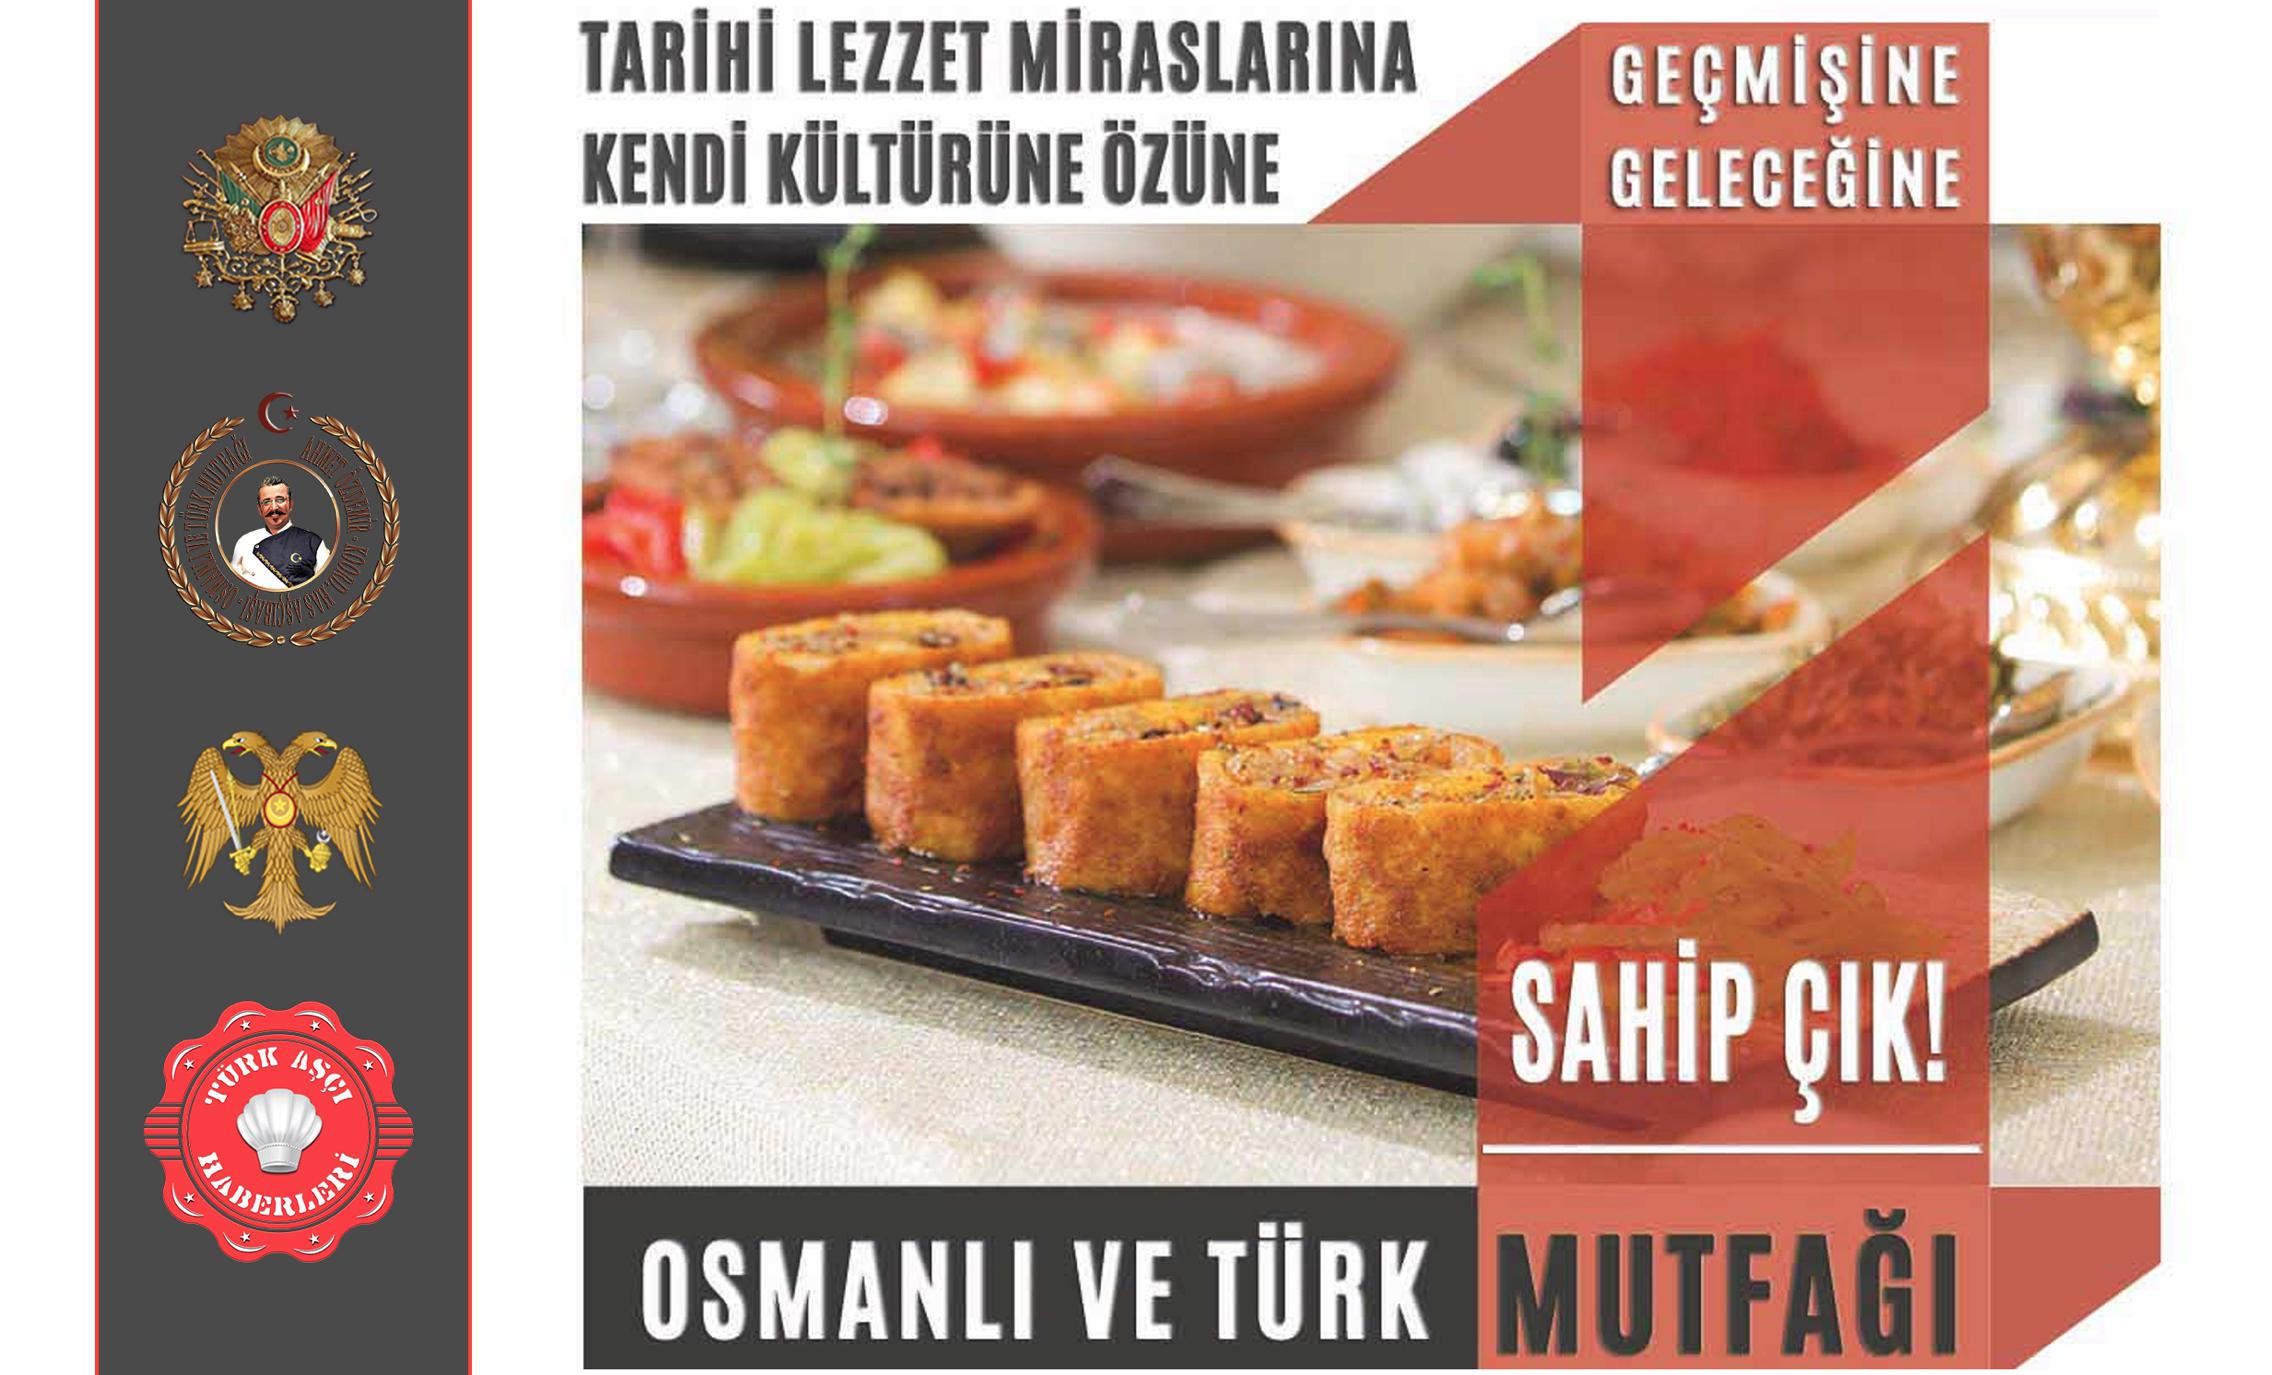 Gerçek “Füzyon” Mutfağının Has'ı Osmanlı ve Türk Mutfağı‘dır